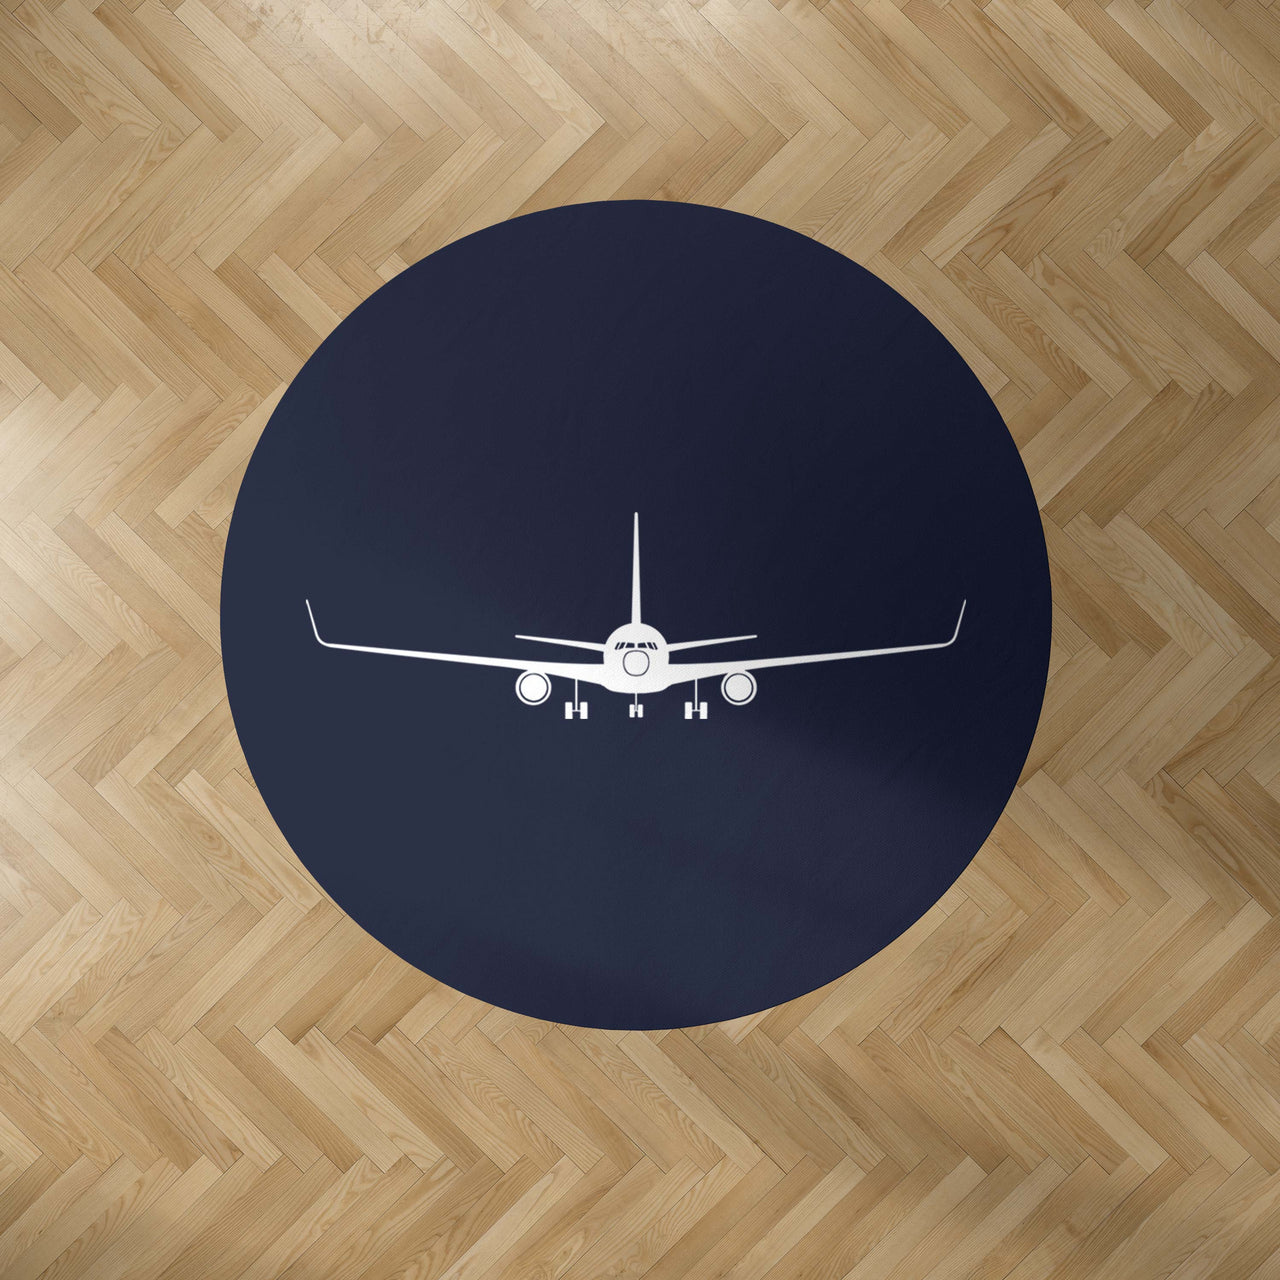 Boeing 767 Silhouette Designed Carpet & Floor Mats (Round)